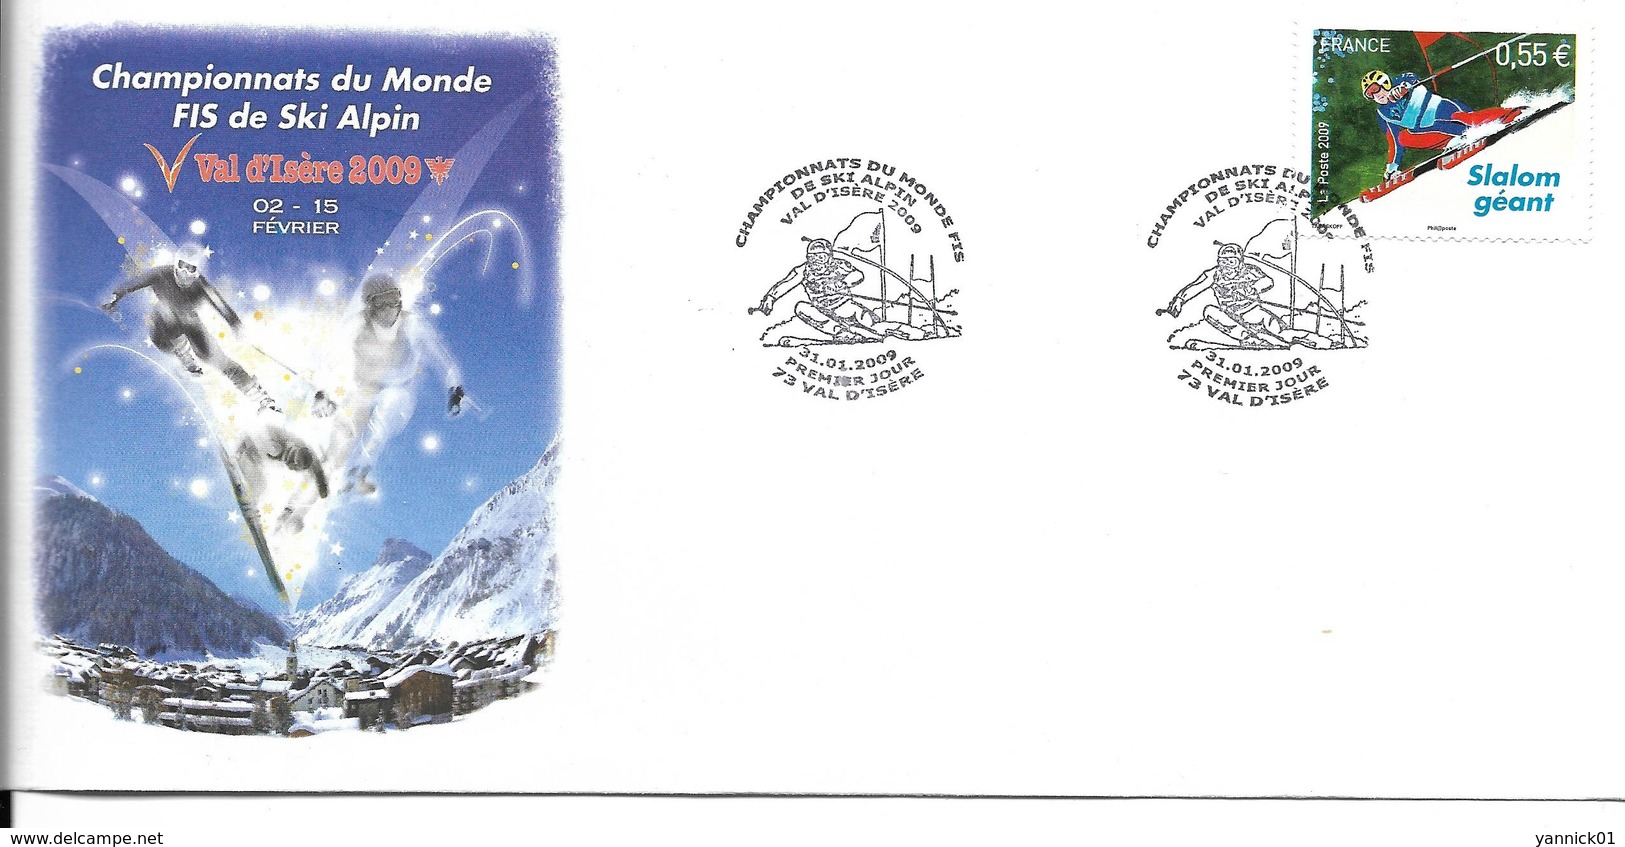 SKI ALPIN - CHAMPIONNAT DU MONDE - WORLD CHAMPIONSHIP ALPINE SKIING - VAL D'ISERE 2009 FRANCE - Ski